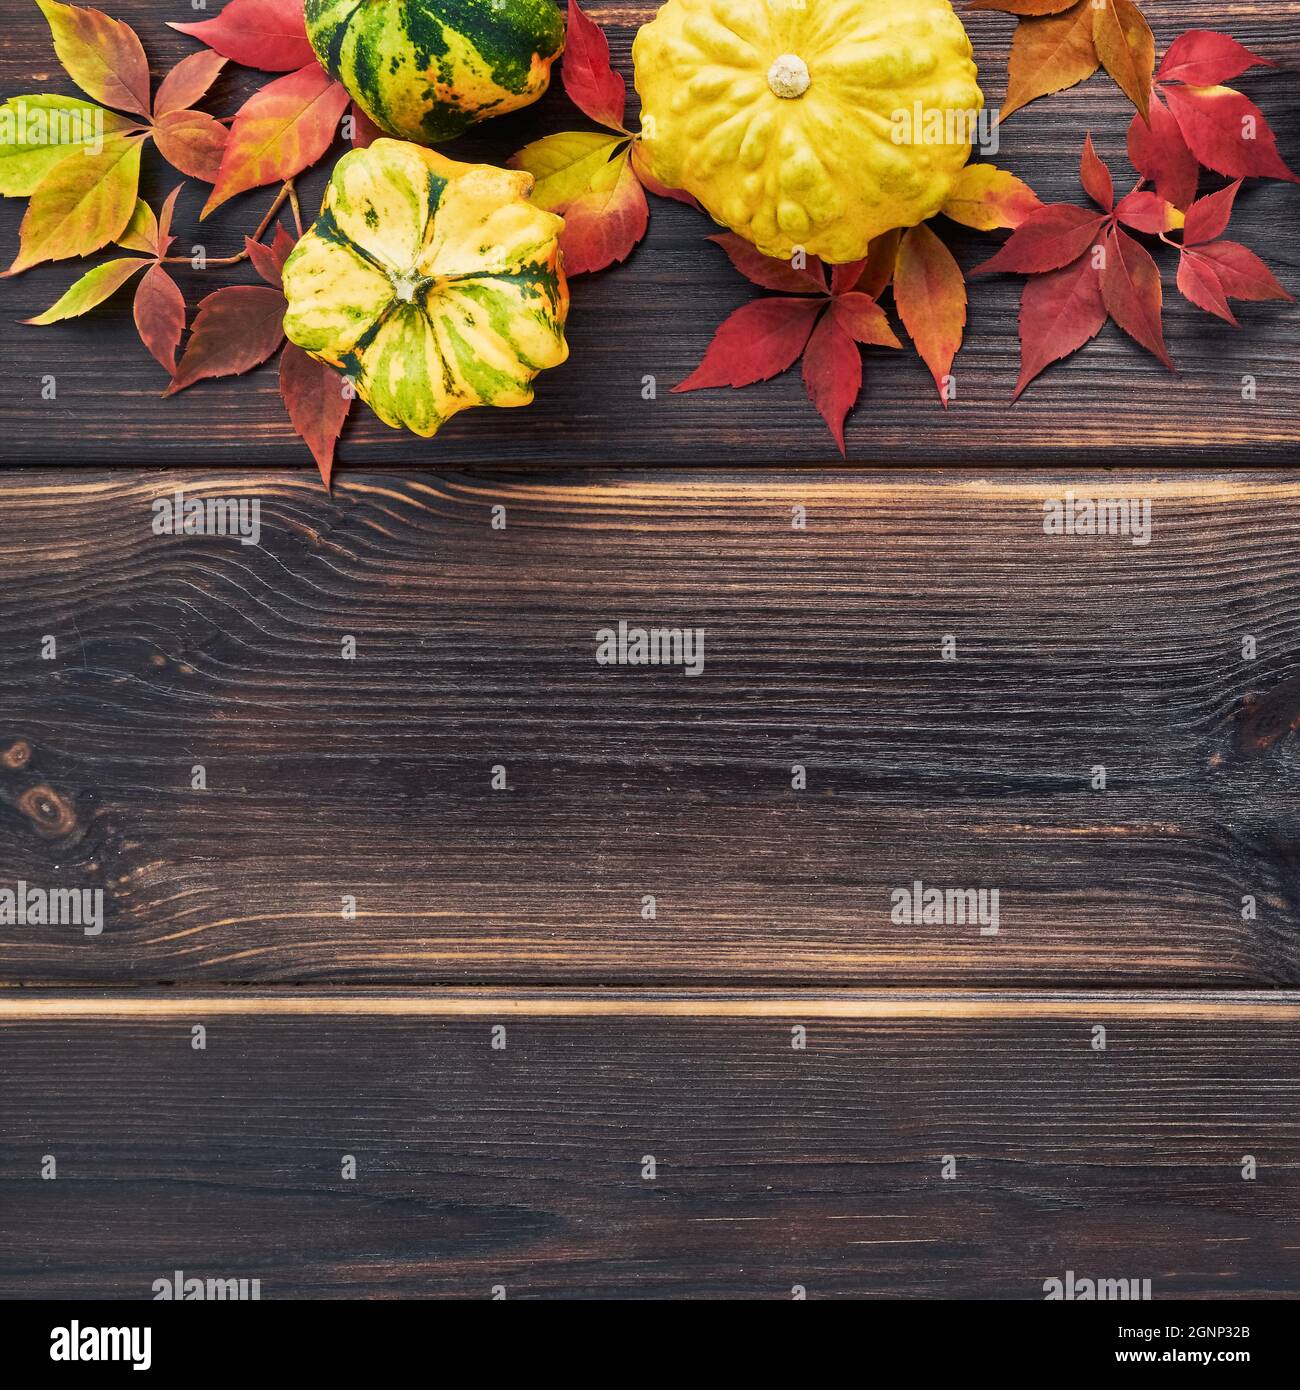 Herbstlicher Hintergrund mit Kürbissen, abgefallenen bunten Blättern auf einem dunklen Holztisch. Happy Thanksgiving Konzept. Flach liegend, Platz für Text kopieren Stockfoto